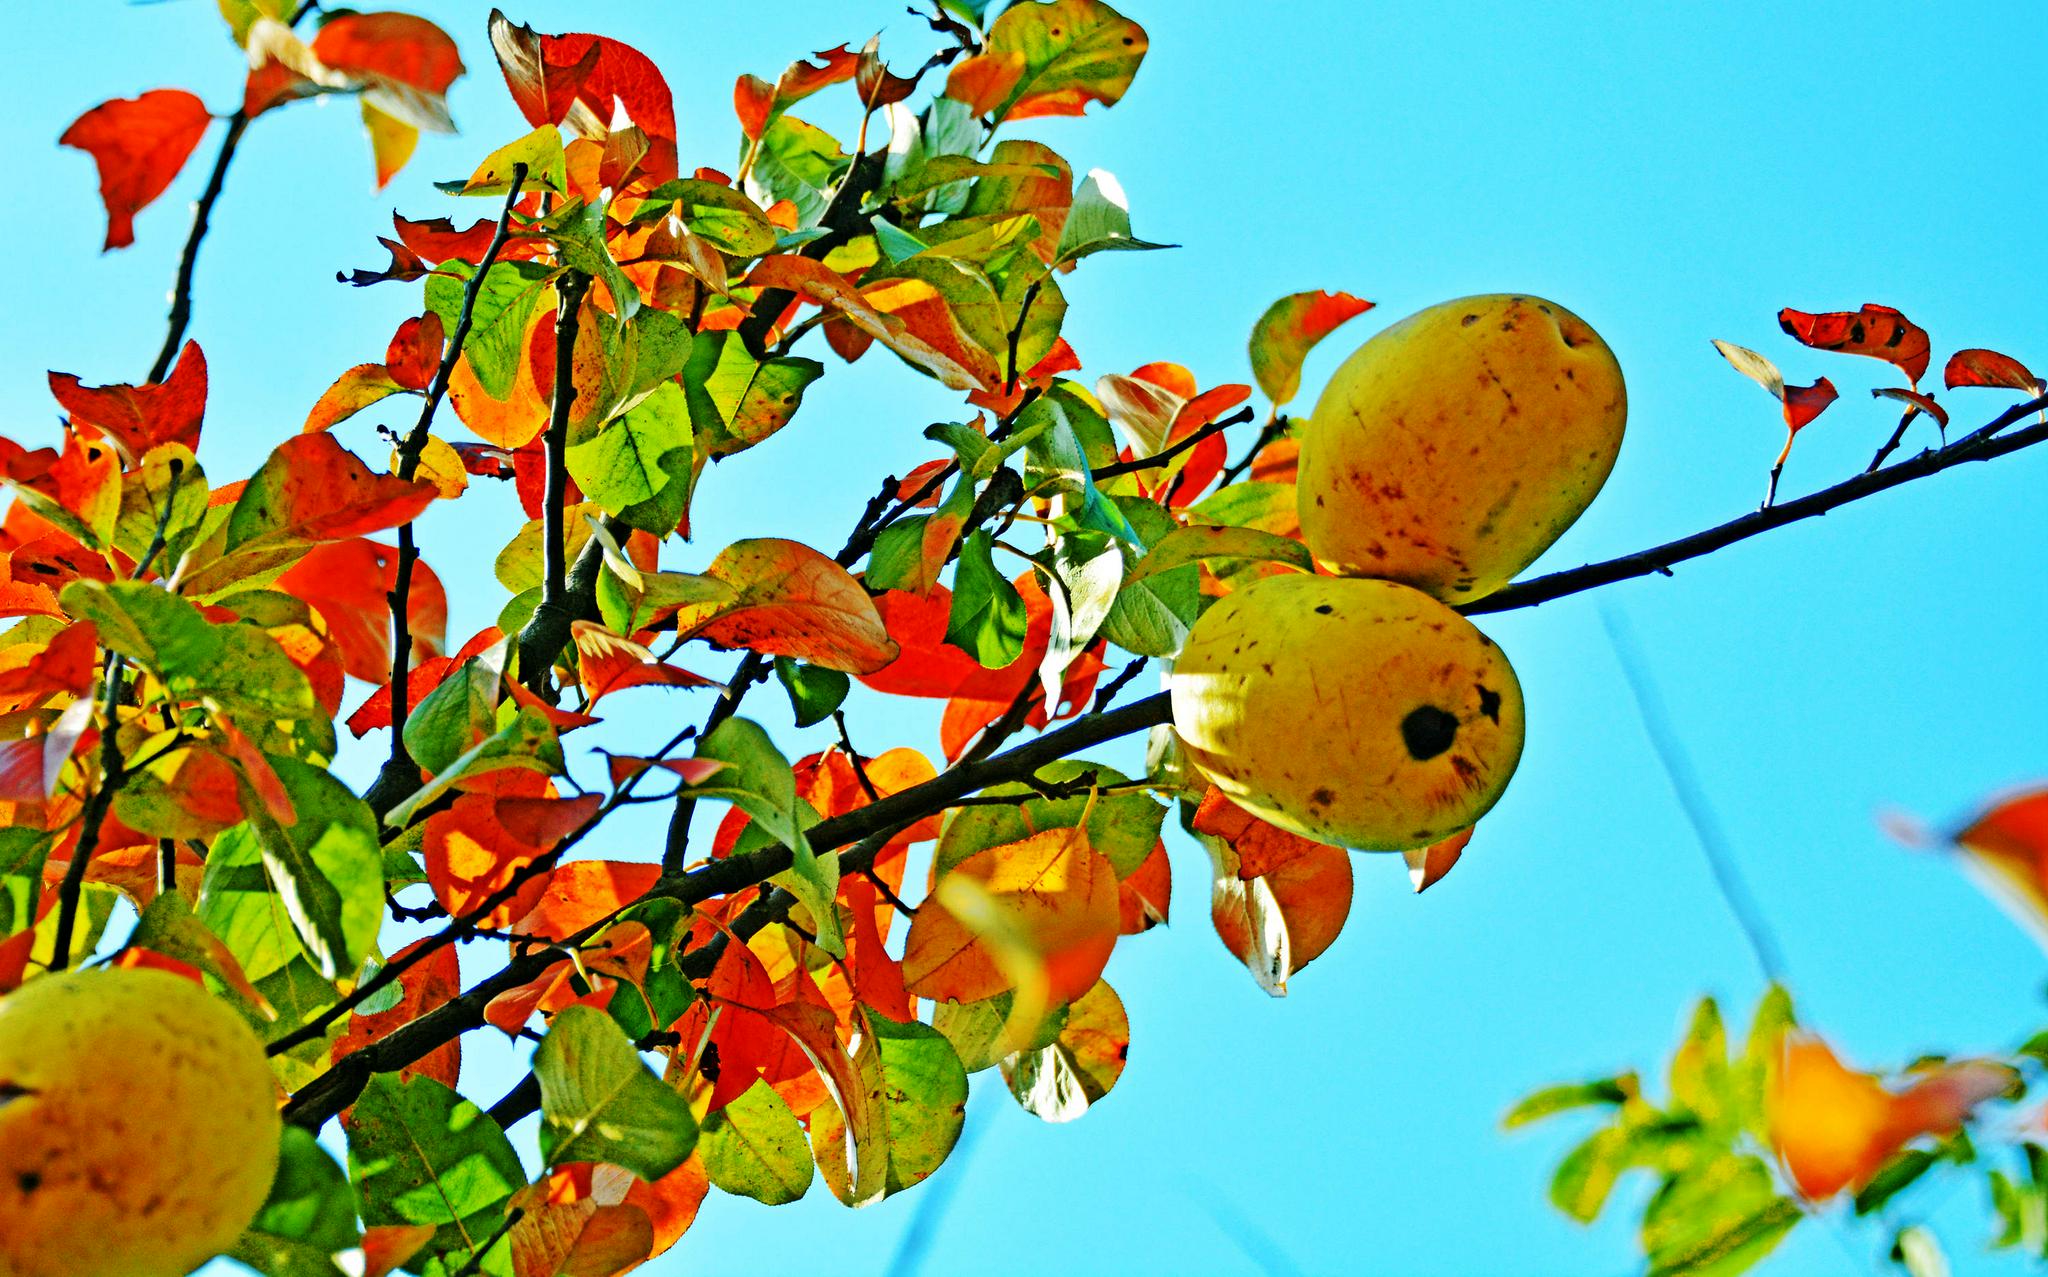 木瓜海棠果,有非常好的食用和药用价值,摄于无锡锡山区云林街道